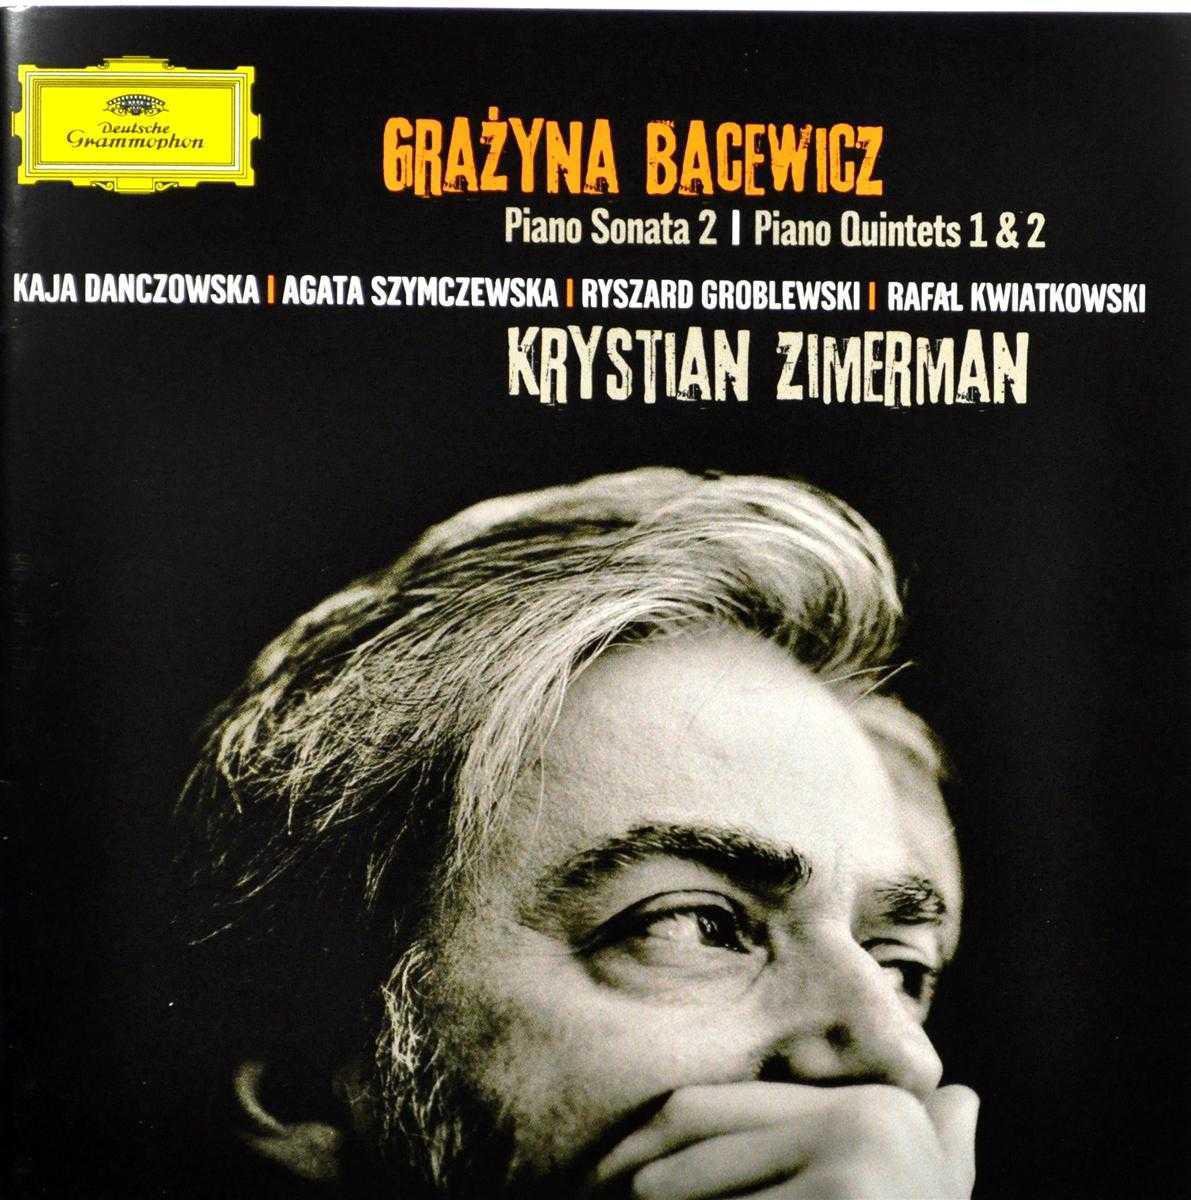 Hommage to Grazyna Bacewicz: Piano Sonata No. 2 | Krystian Zimerman, Grazyna Bacewicz